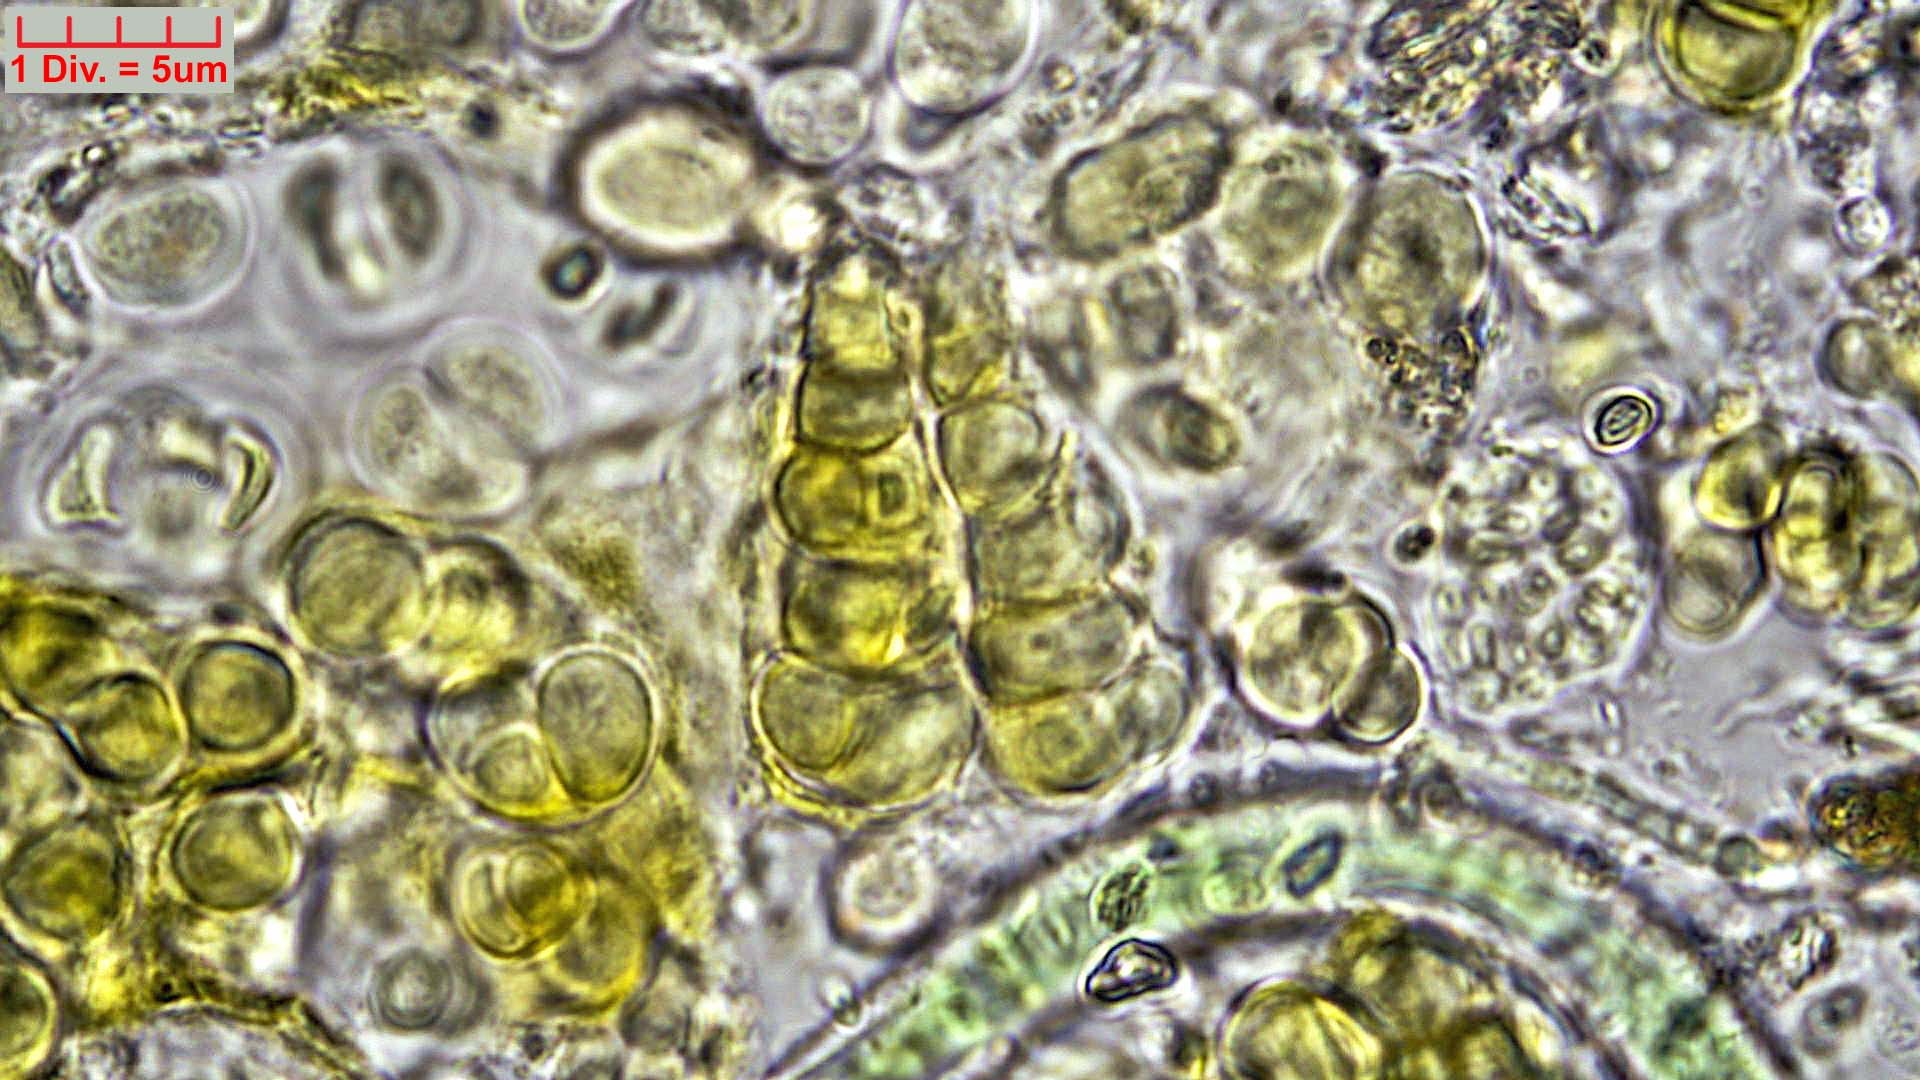 ././Cyanobacteria/Pleurocapsales/Hyellaceae/Pleurocapsa/fuliginosa/pleurocapsa-fuliginosa-164.jpg